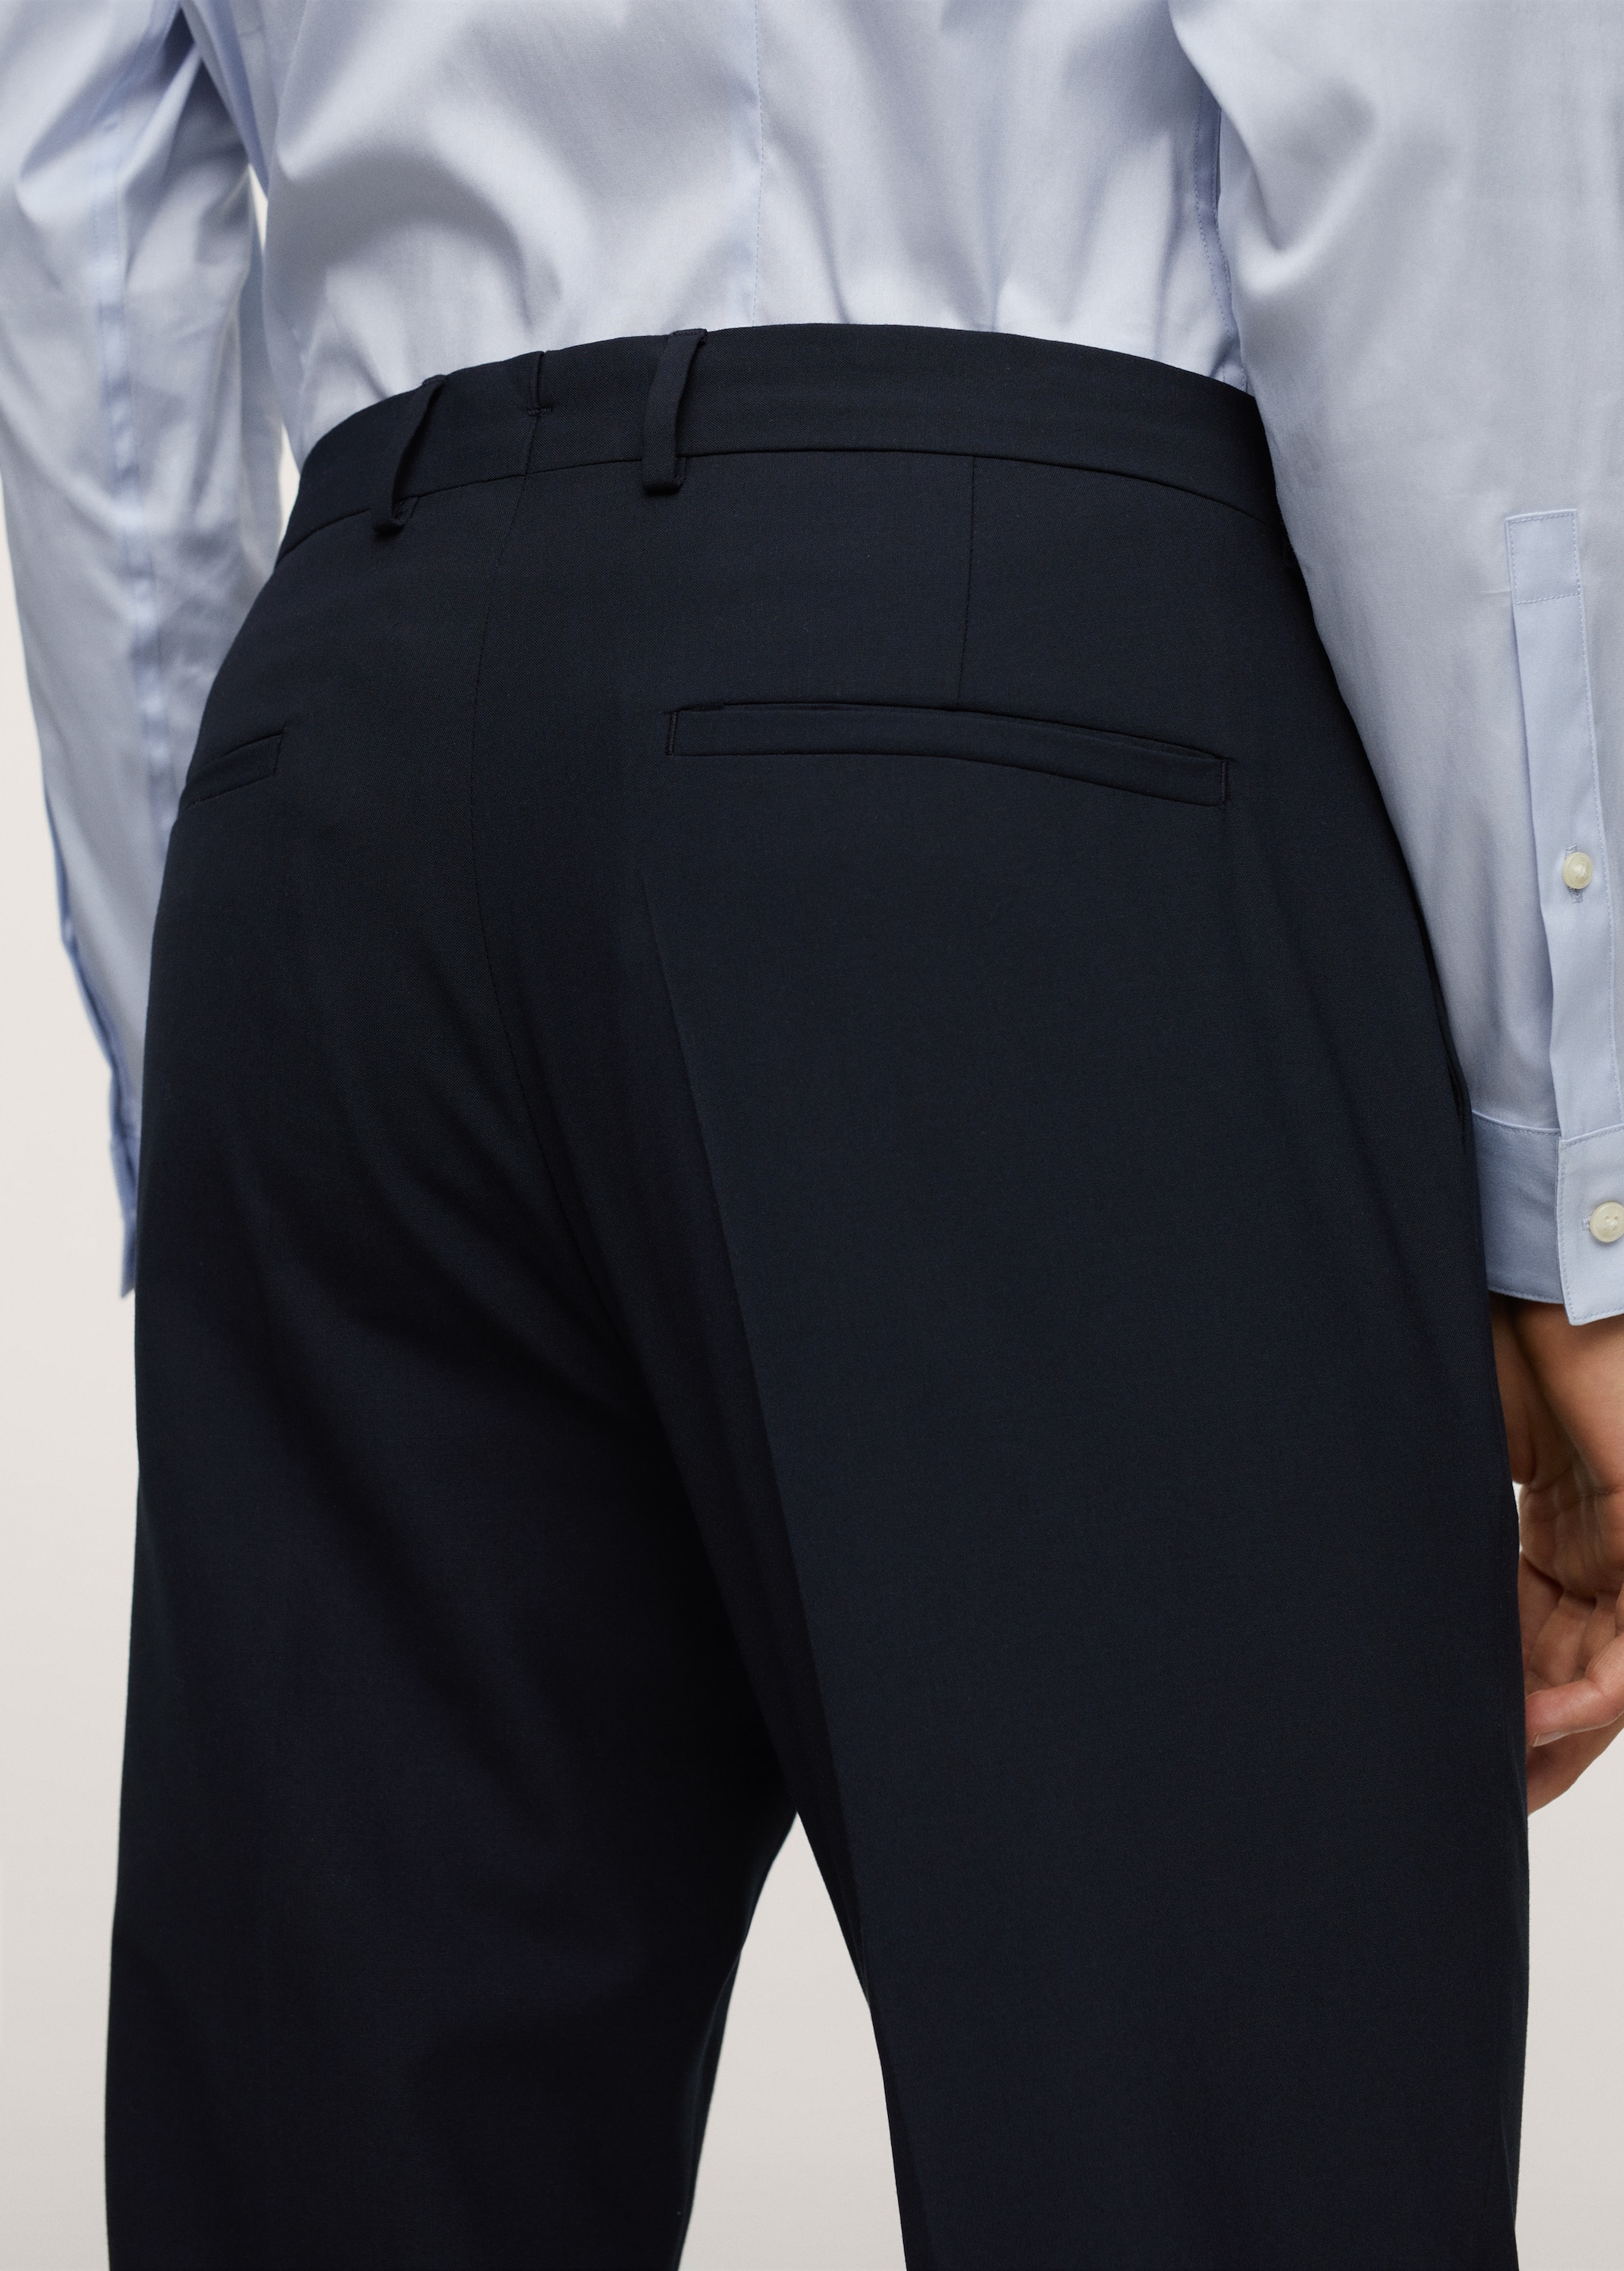 Pantalons vestir súper slim fit - Detall de l'article 2